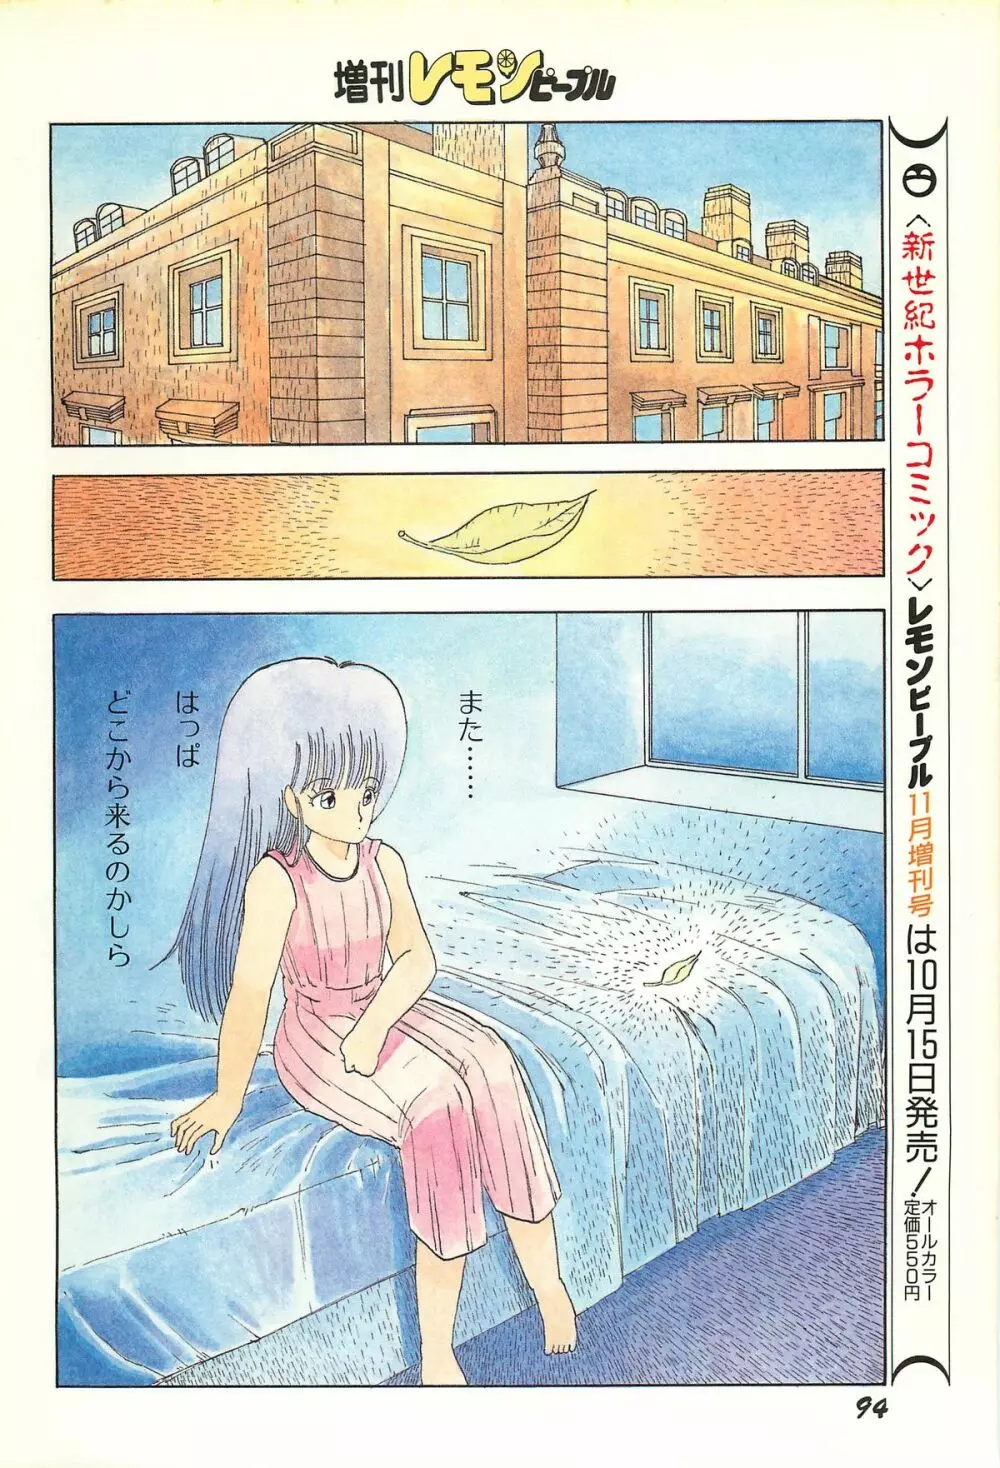 レモンピープル 1986年9月増刊号 Vol.61 オールカラー 96ページ